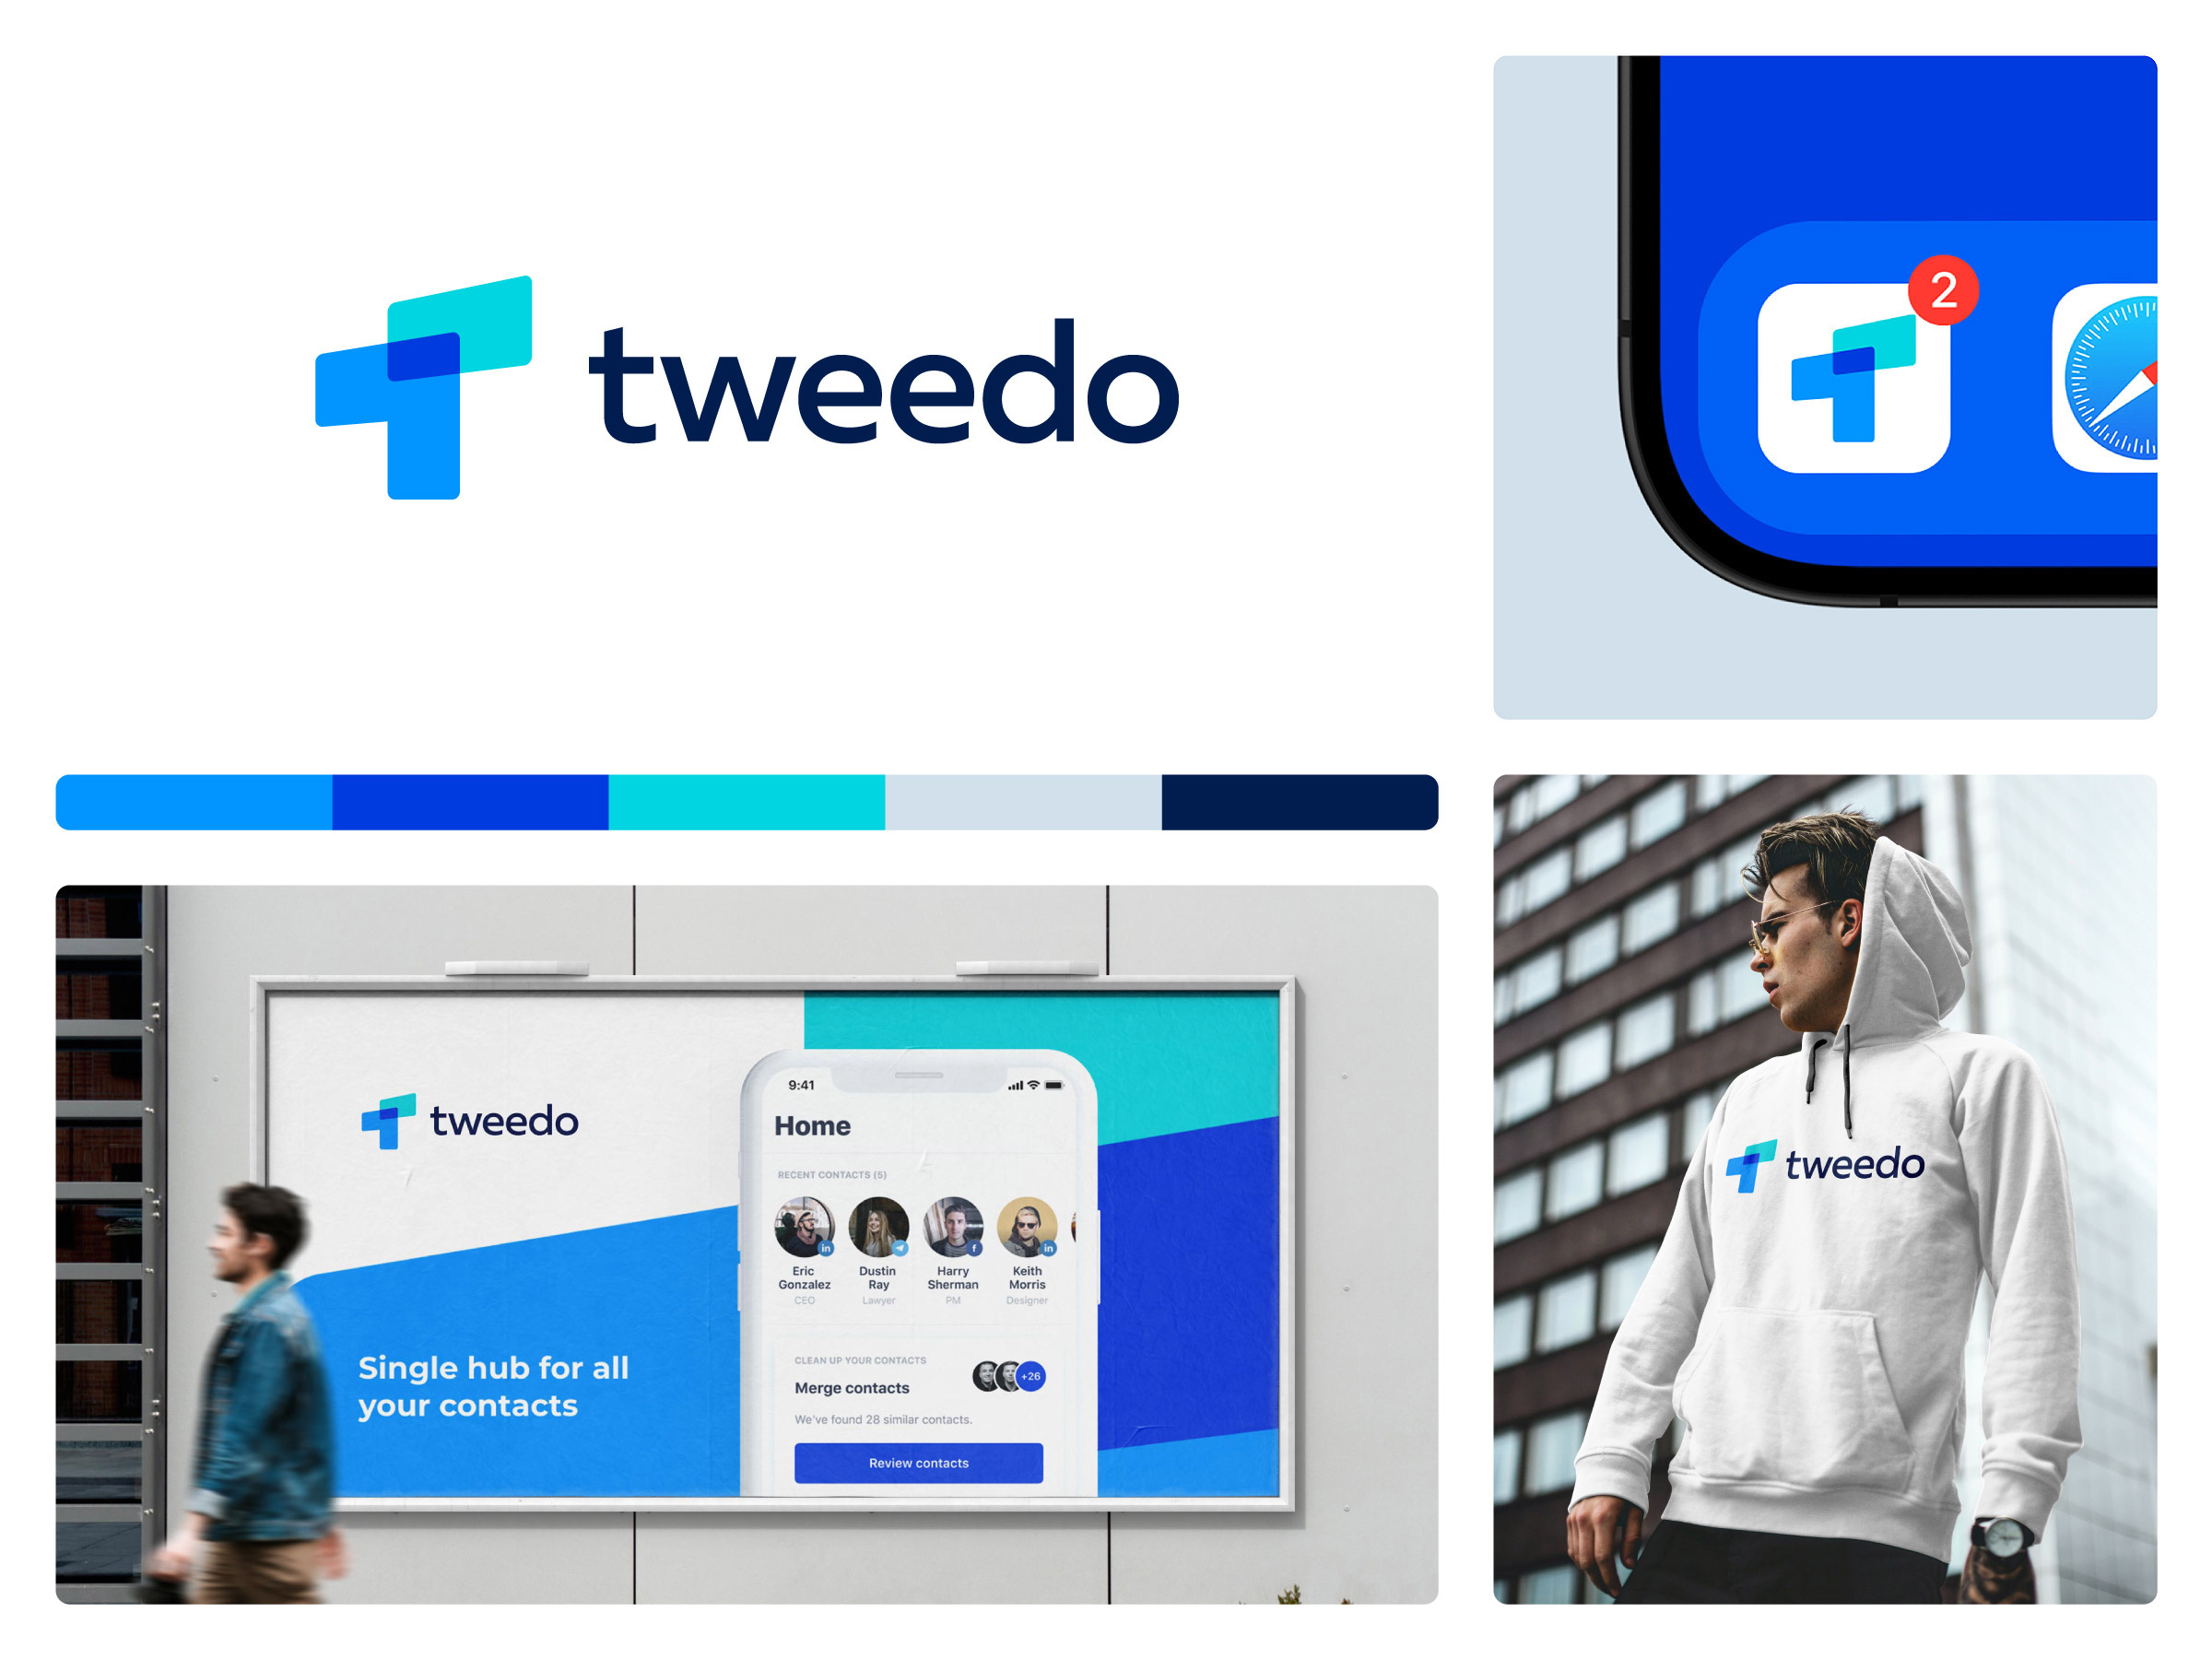 Tweedo – Branding for a Contact Management Platform